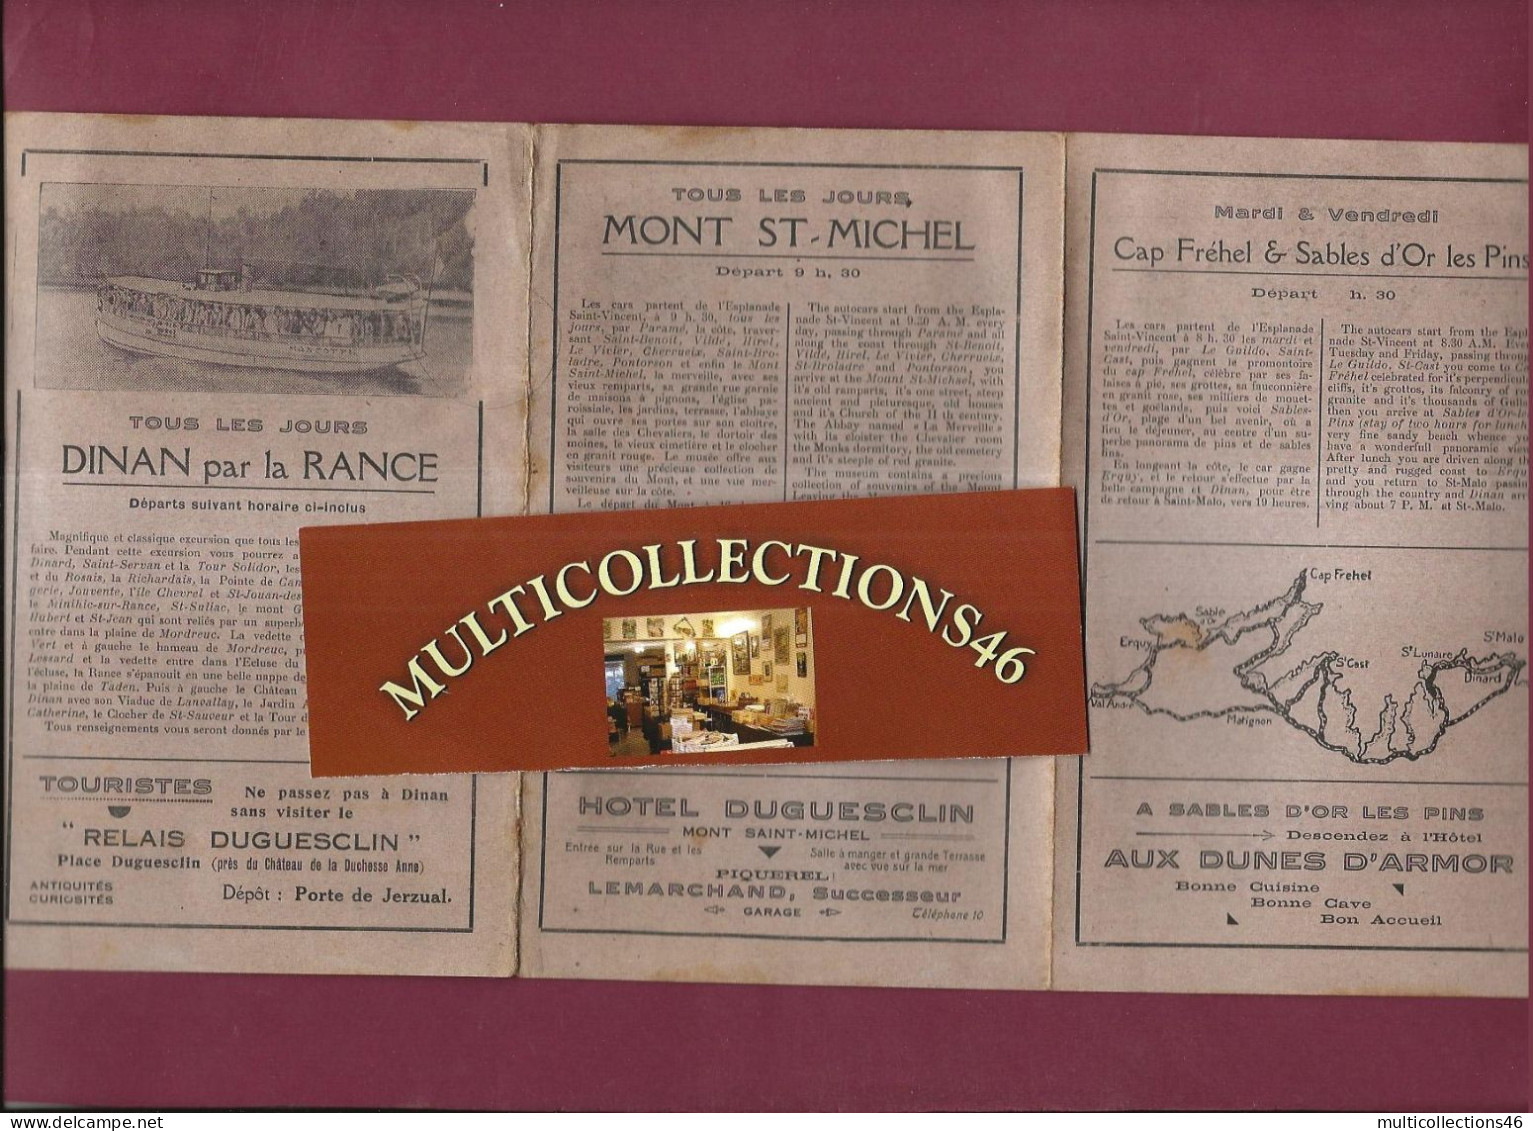 160524 - DEPLIANT TOURISTIQUE - MONT ST MICHEL DINAN CAP FREHEL  CANCALE Autocar Vedette - Reiseprospekte